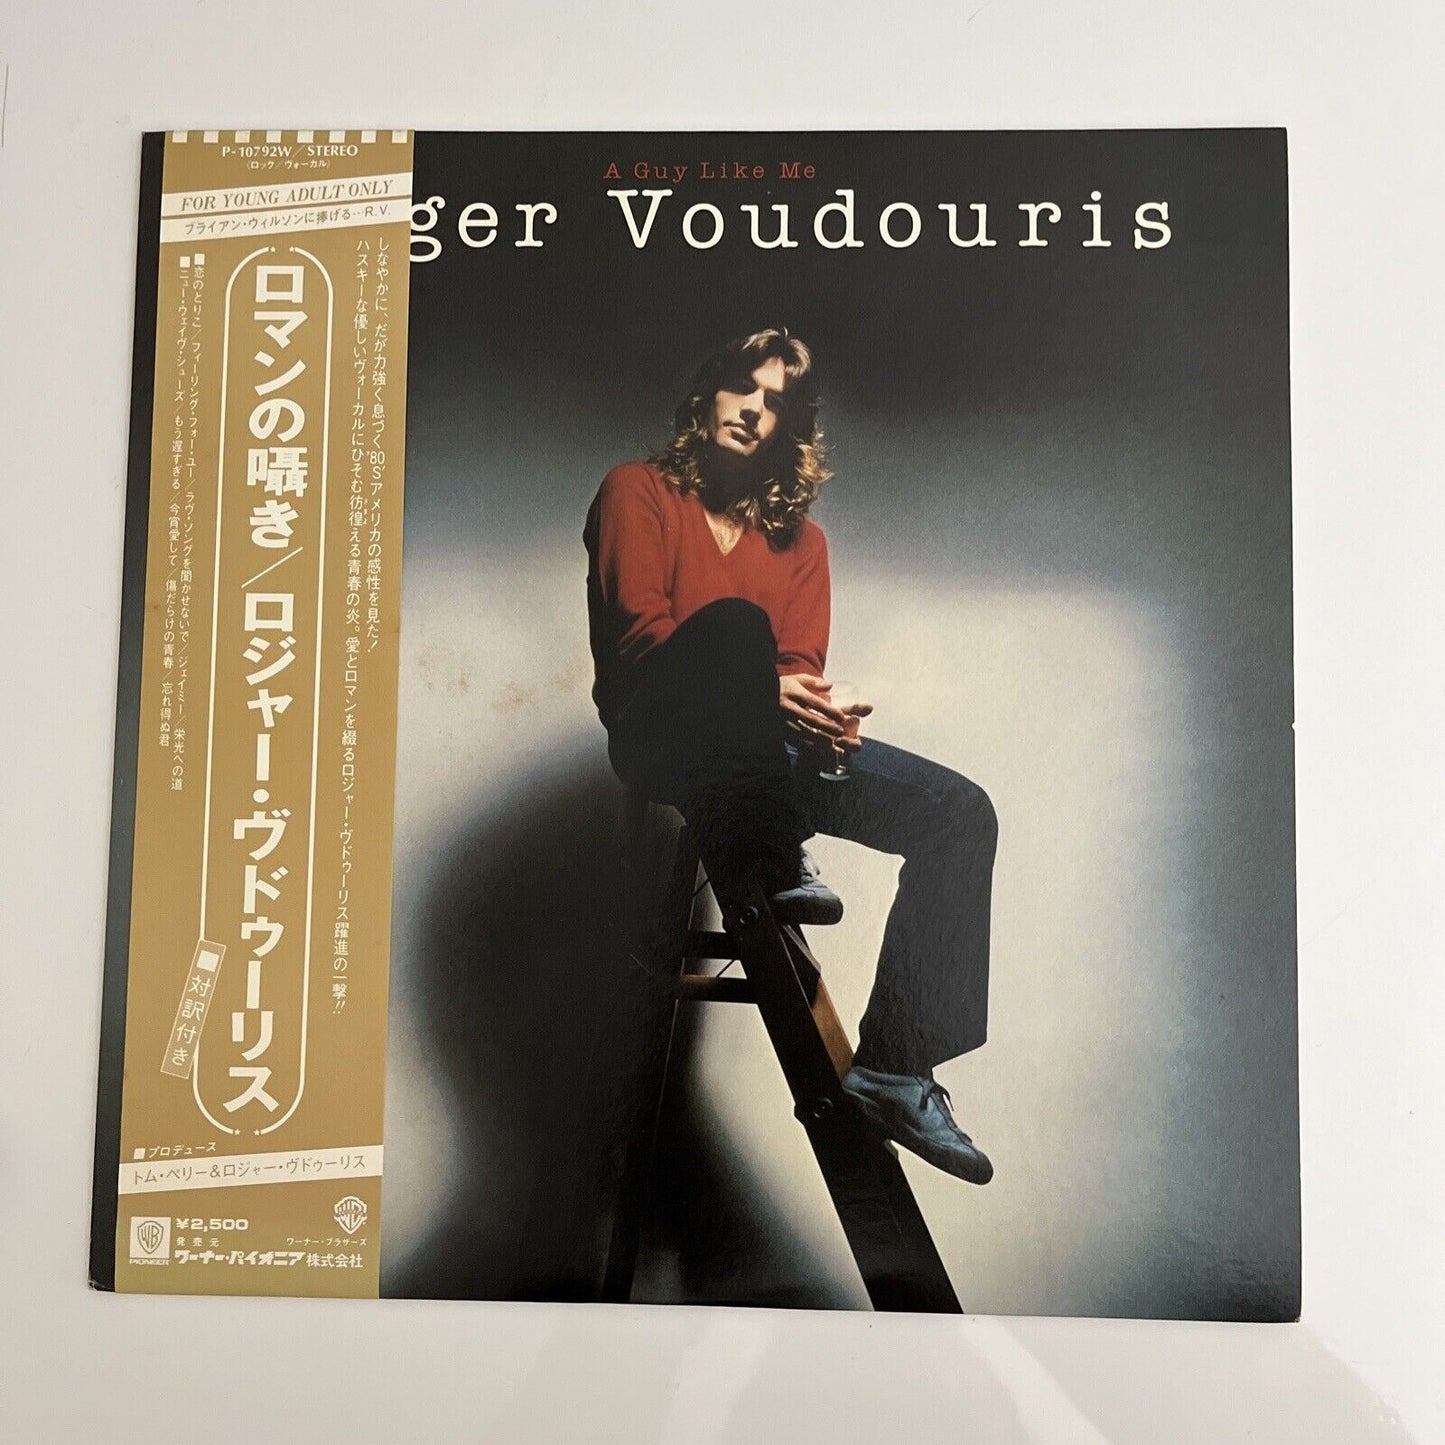 Roger Voudouris – A Guy Like Me LP 1980 Vinyl Record Album P-10792W